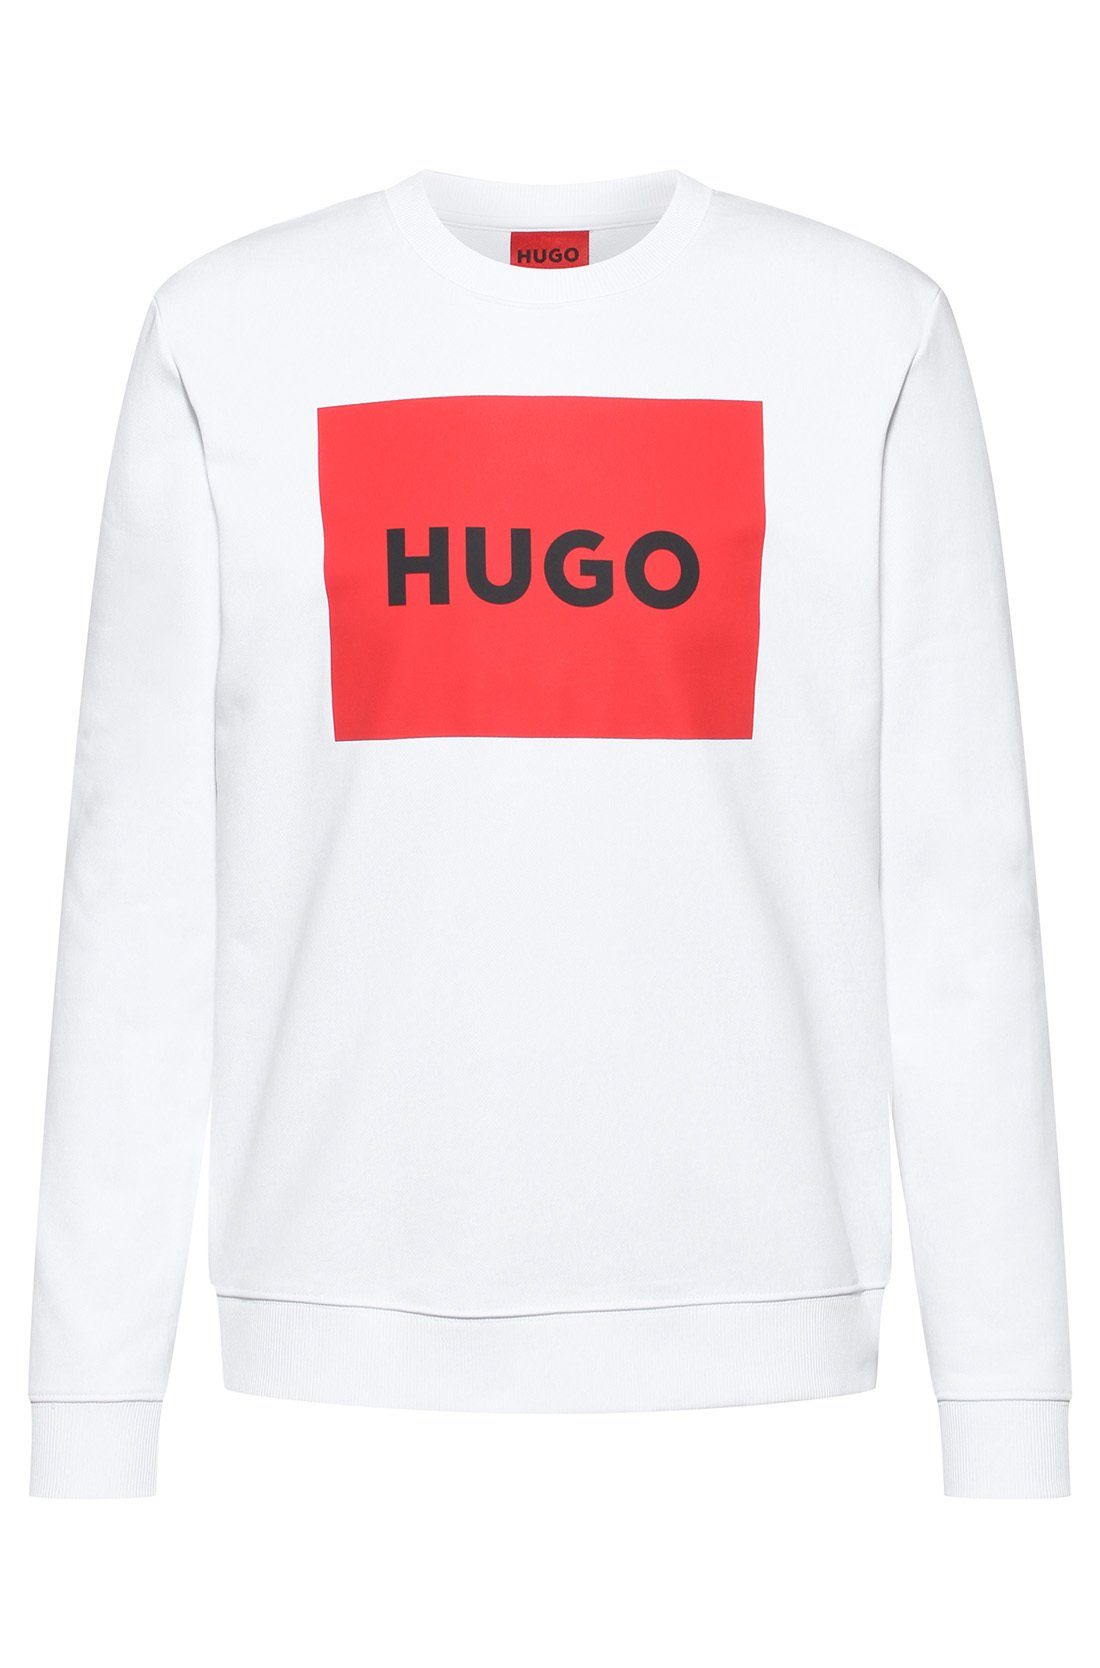 - Sweatshirt, Sweater Duragol222, Rundhals HUGO Sweatshirt Herren Weiß